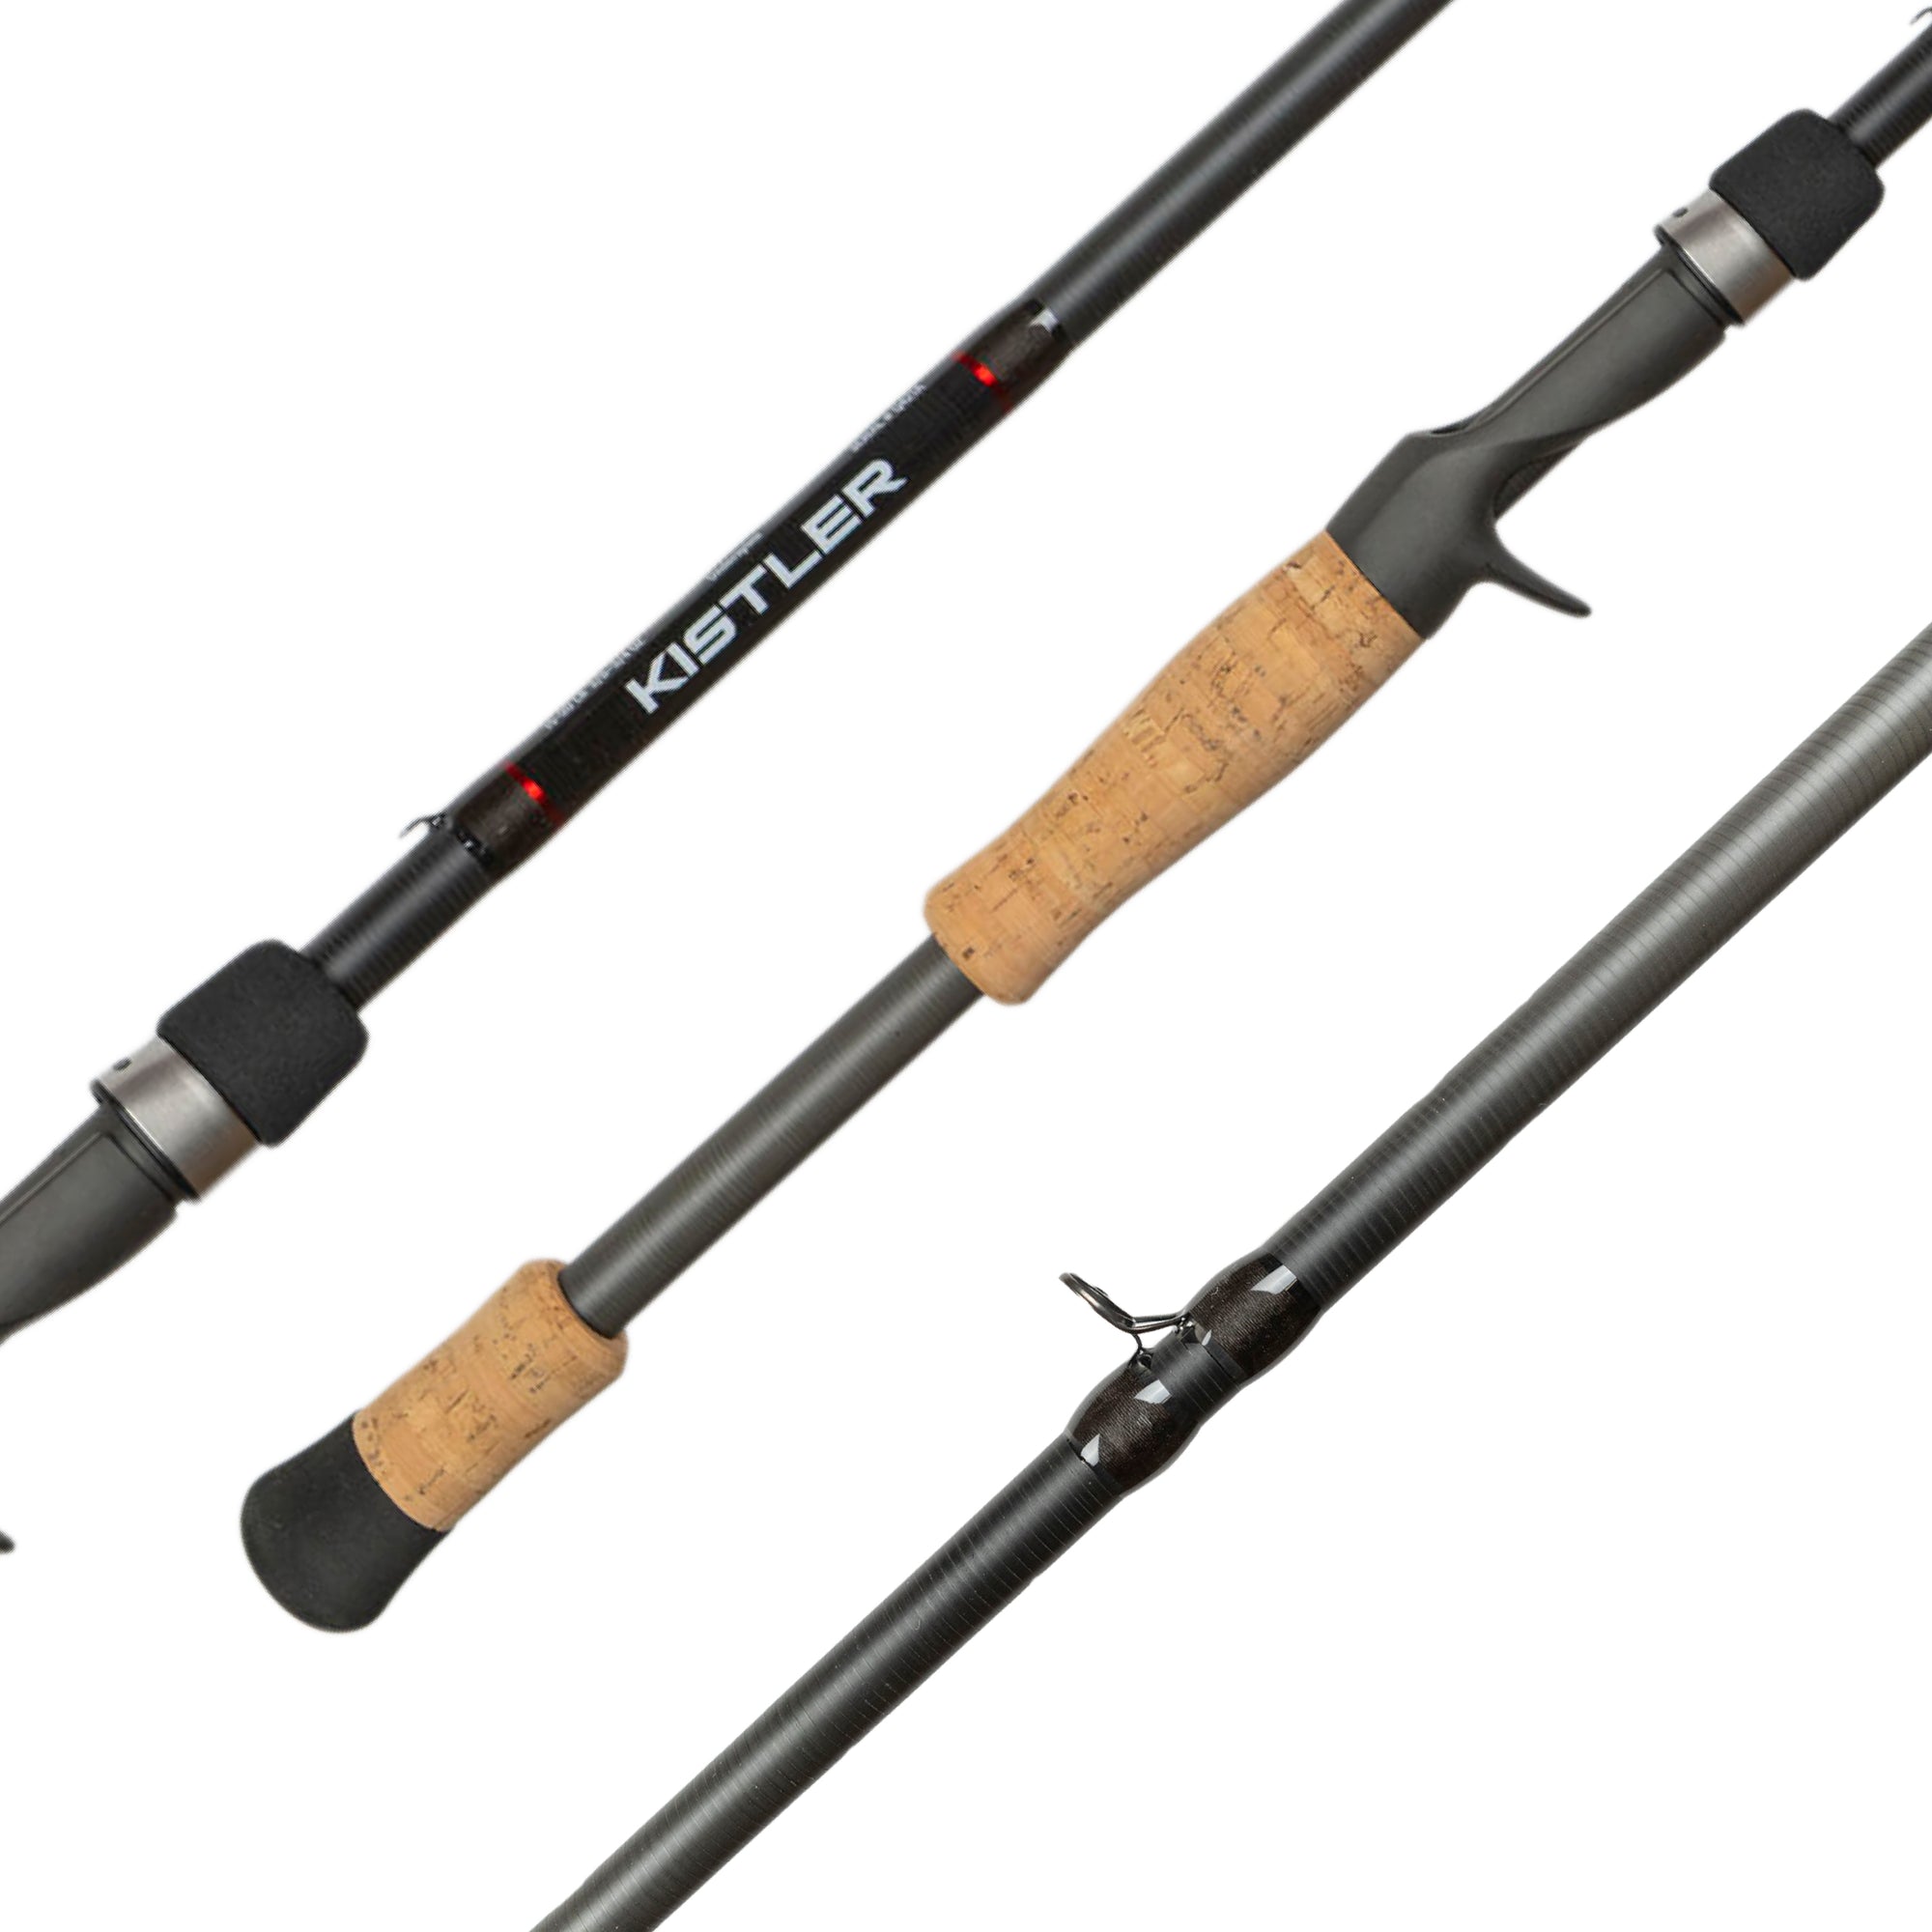 KLX Weightless Worm, Senko, Fluke Casting Rods – KISTLER Fishing